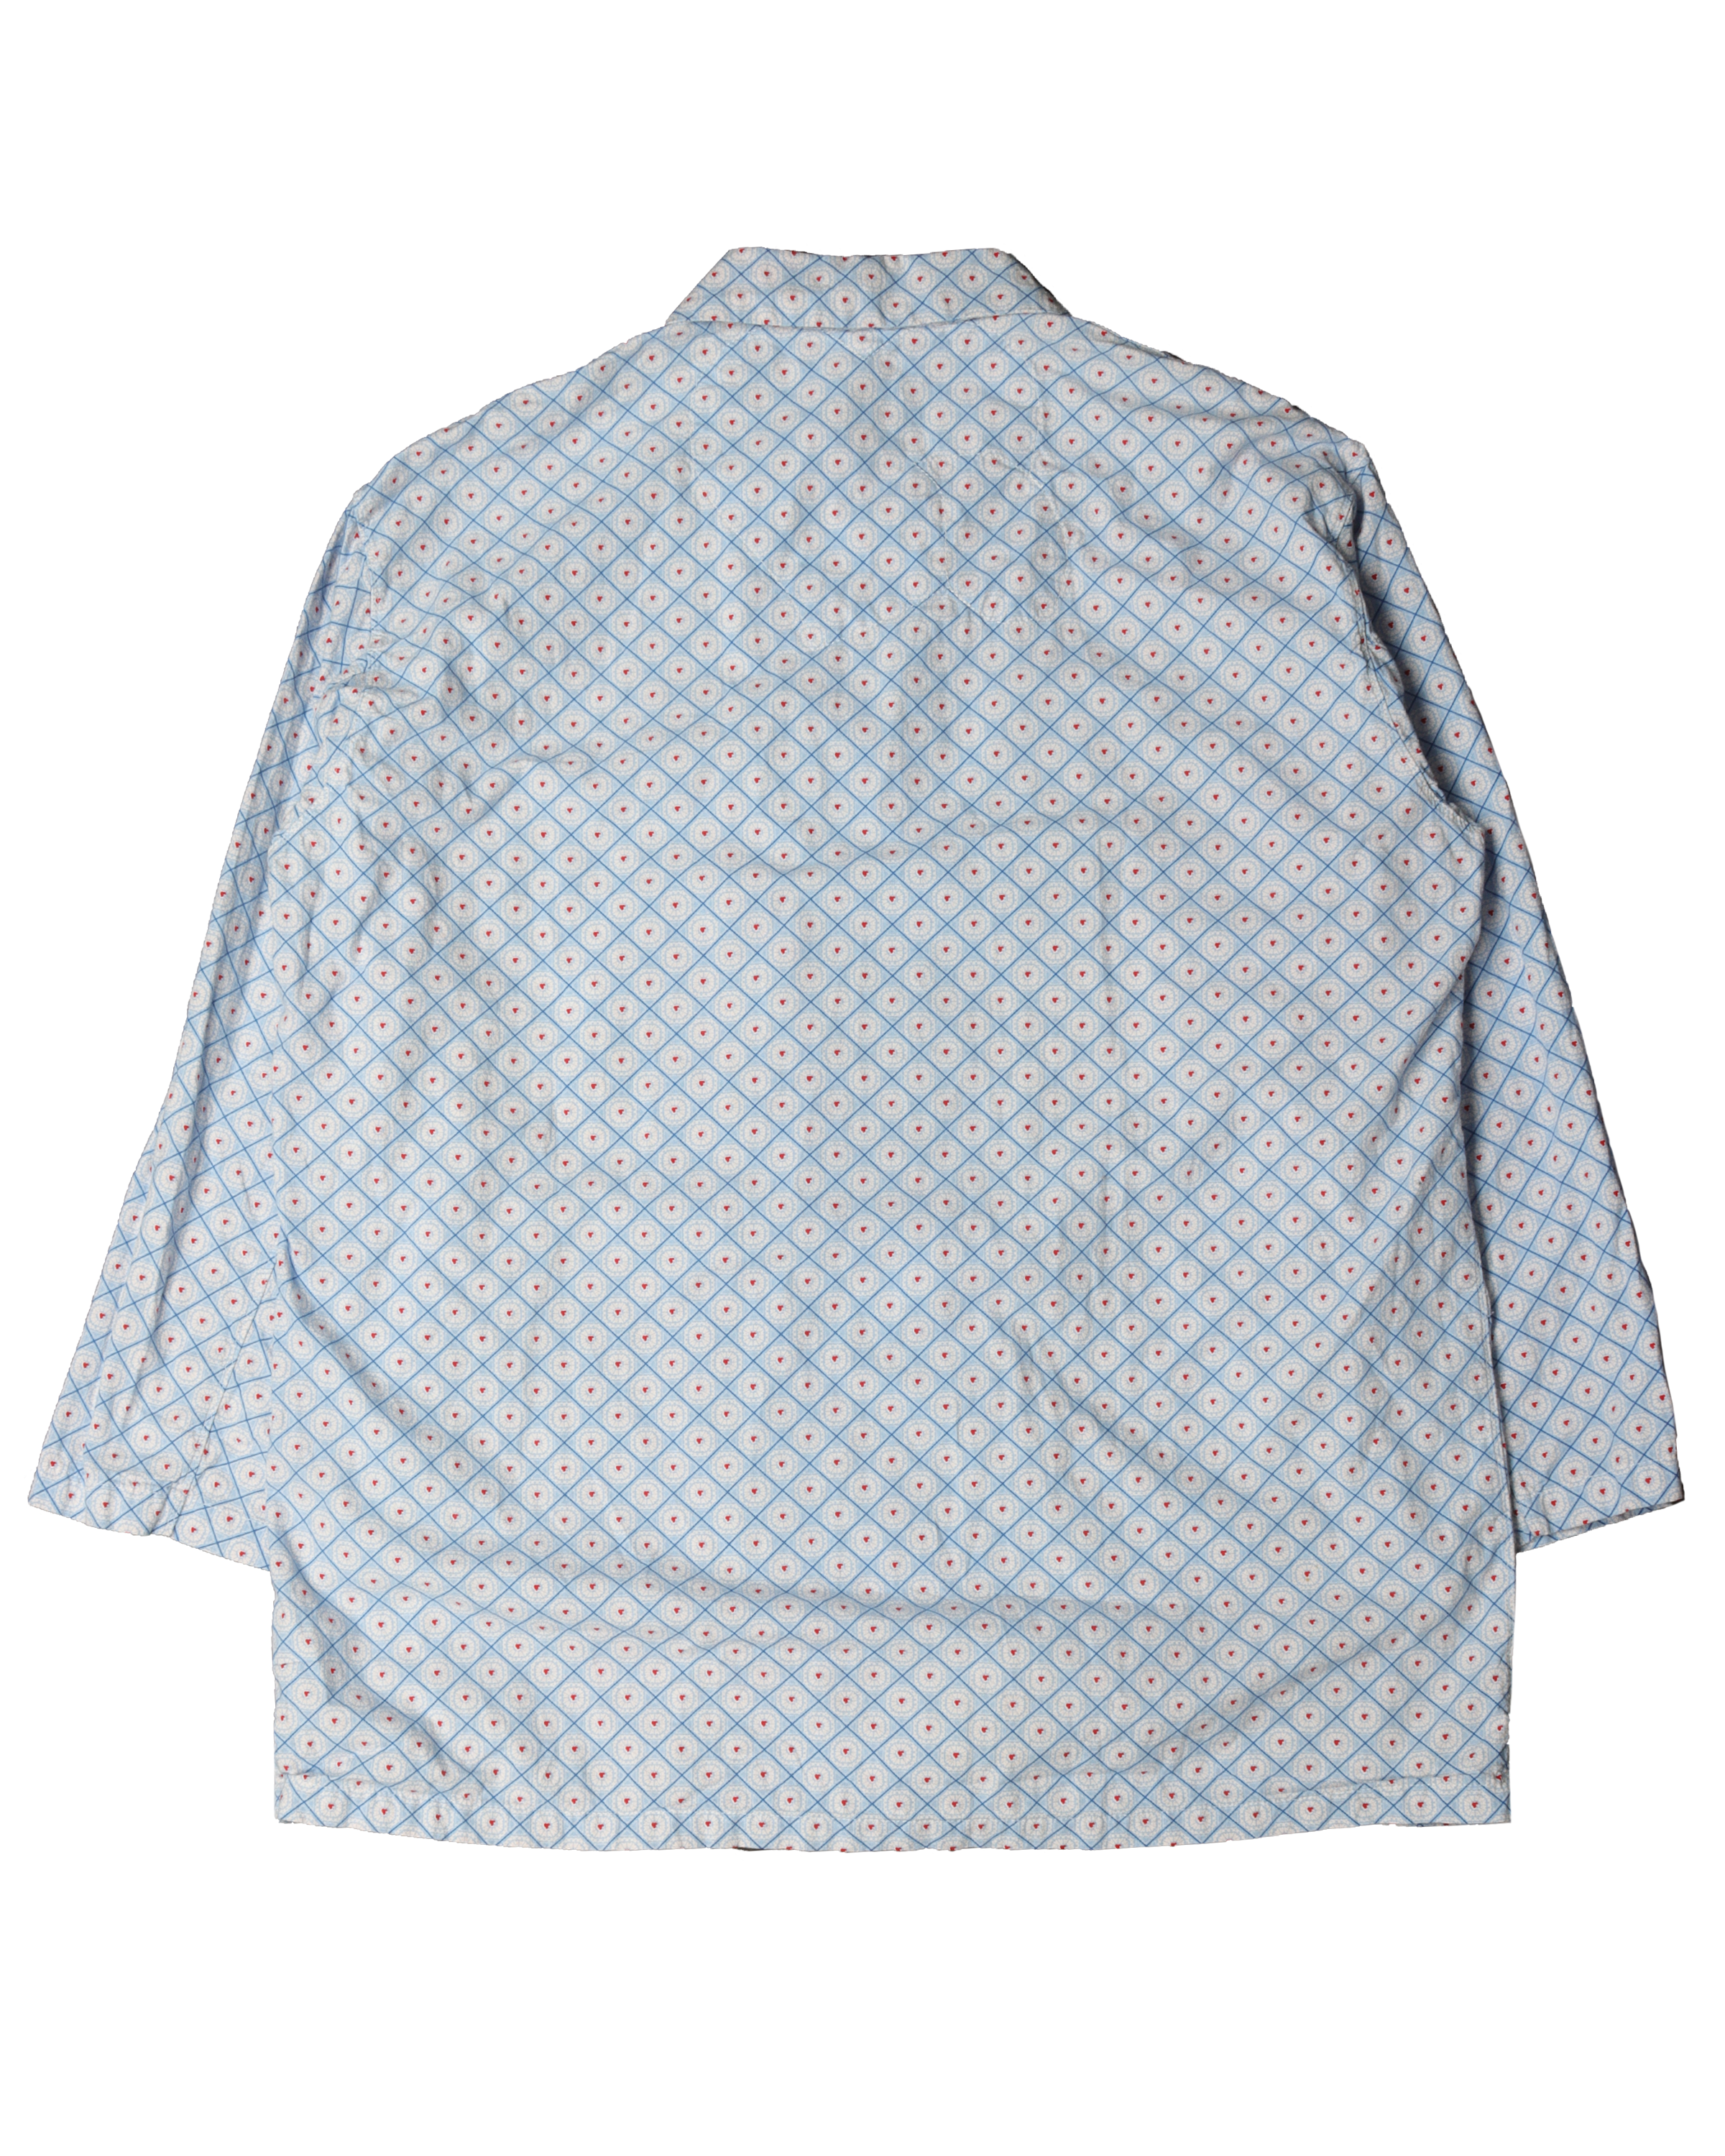 Cotton Long Sleeve Button Up Shirt